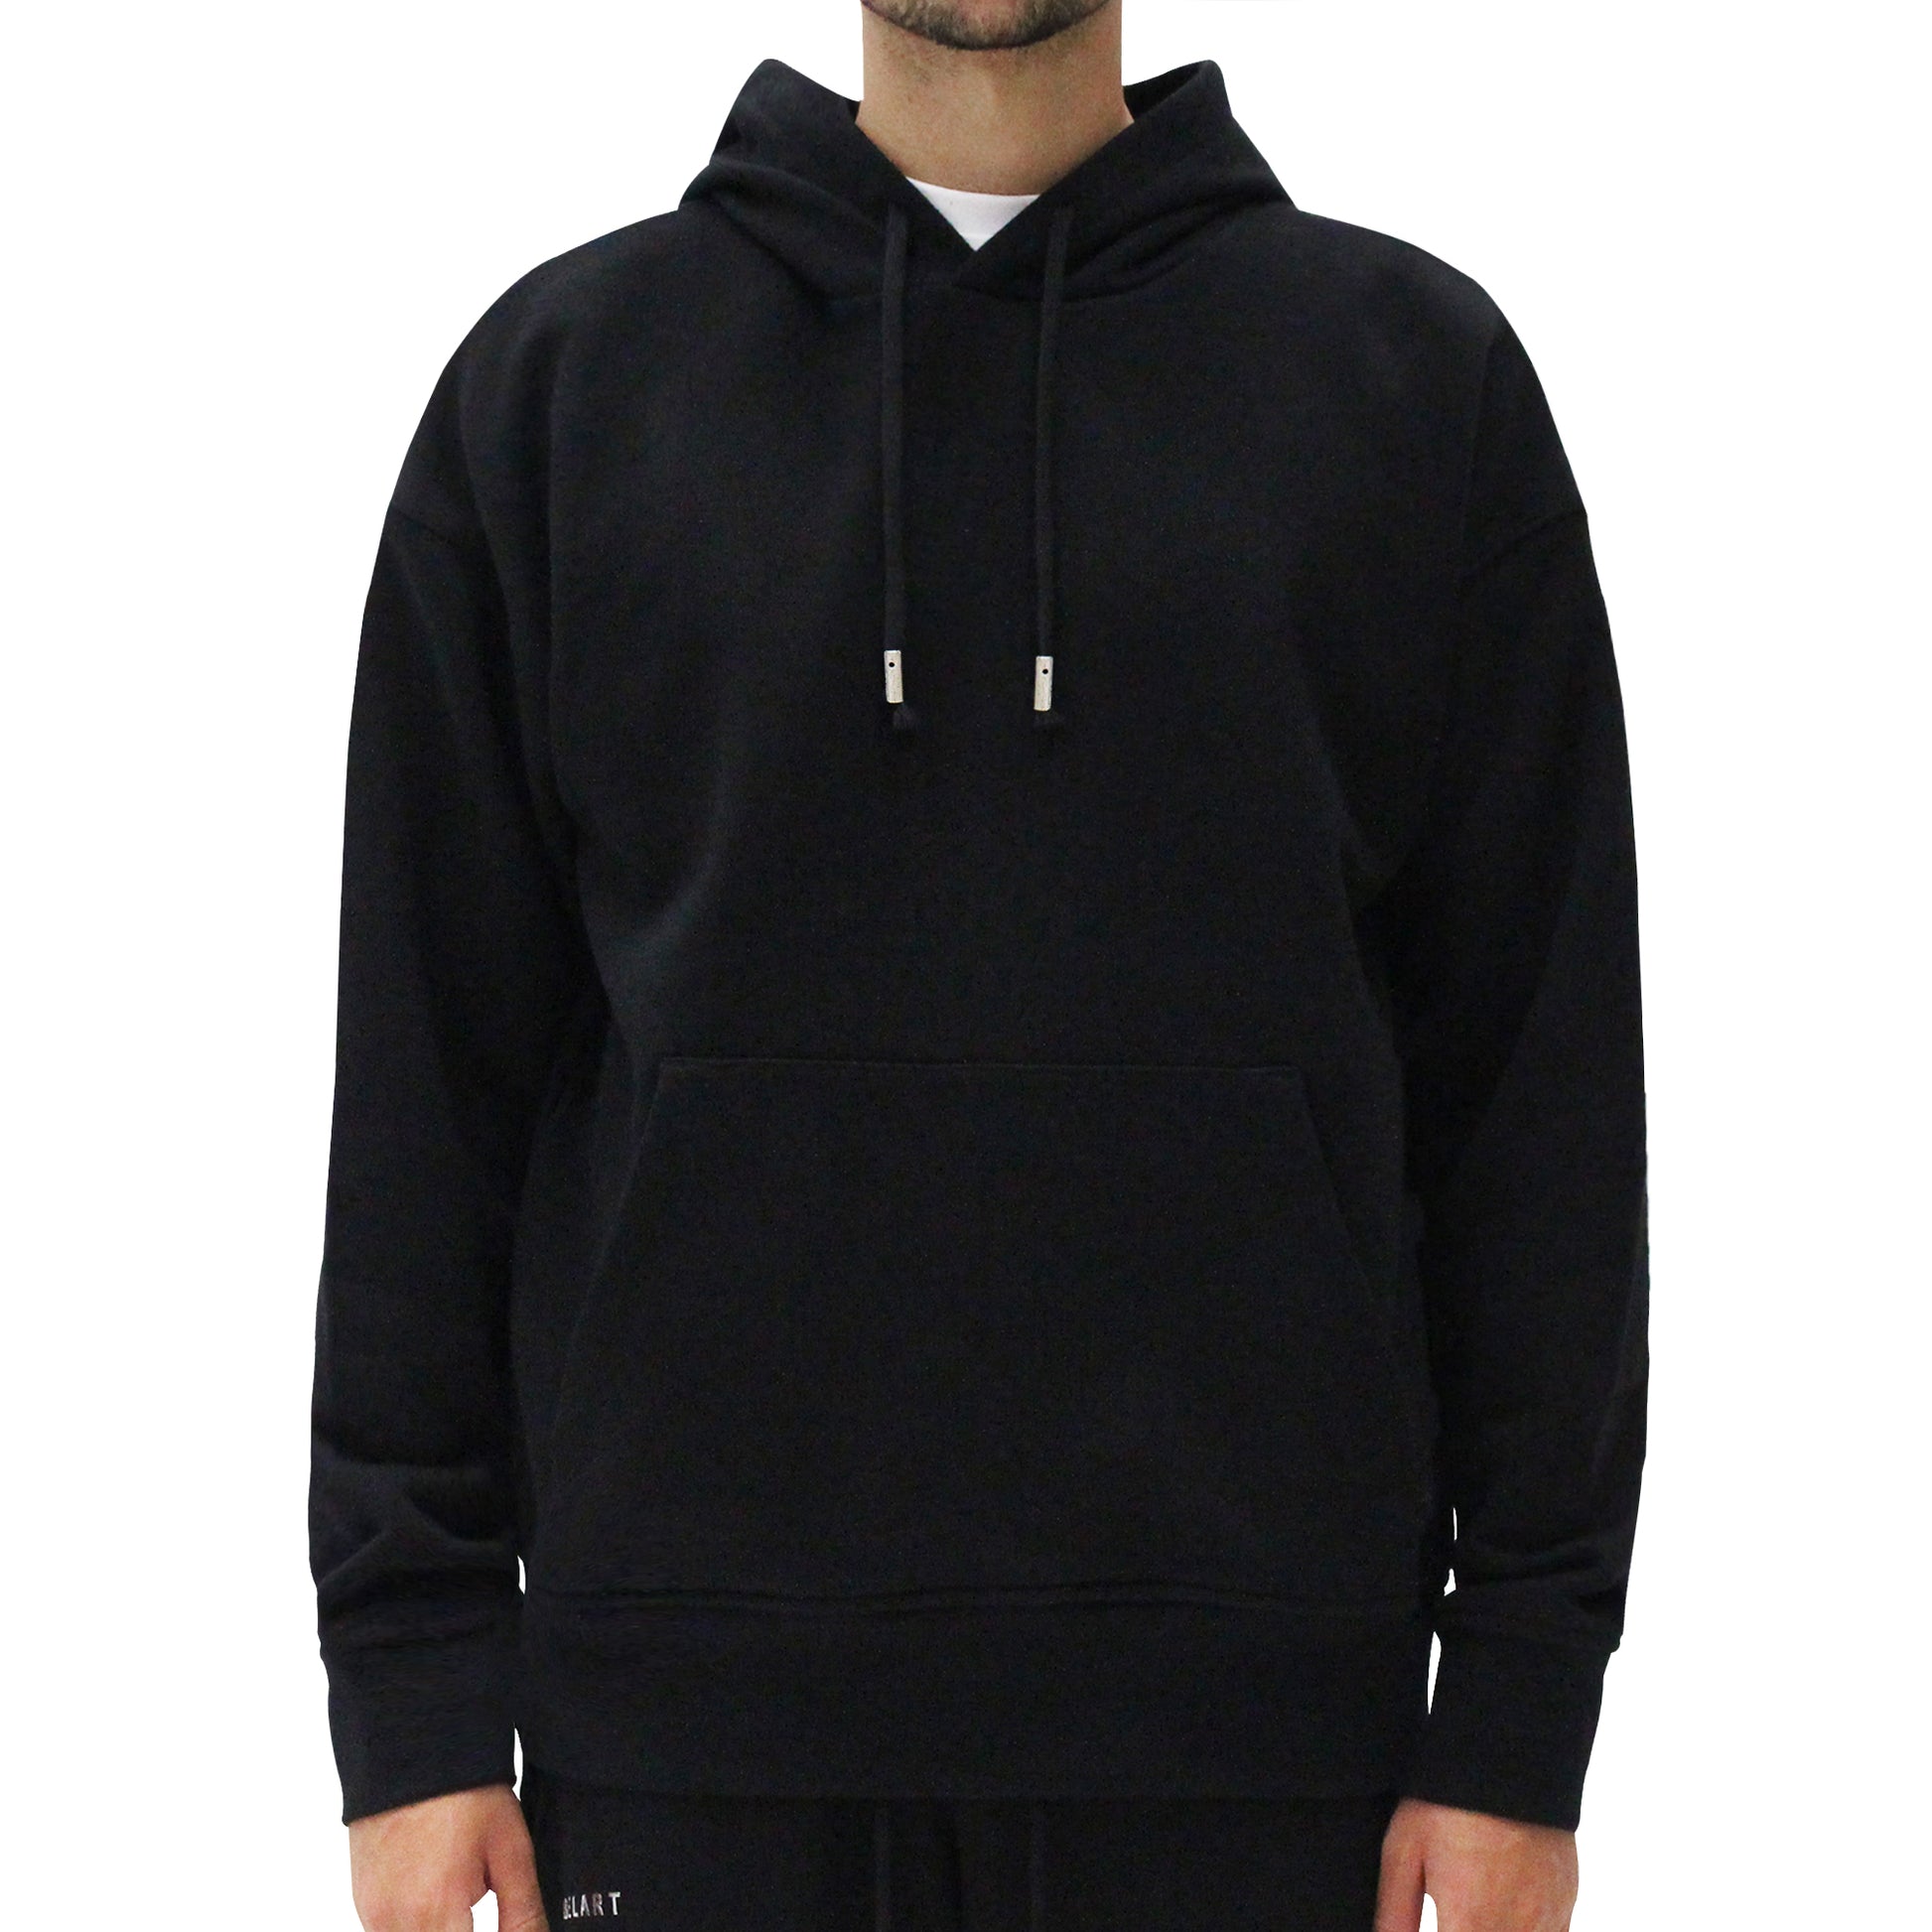 hoodie noir simple